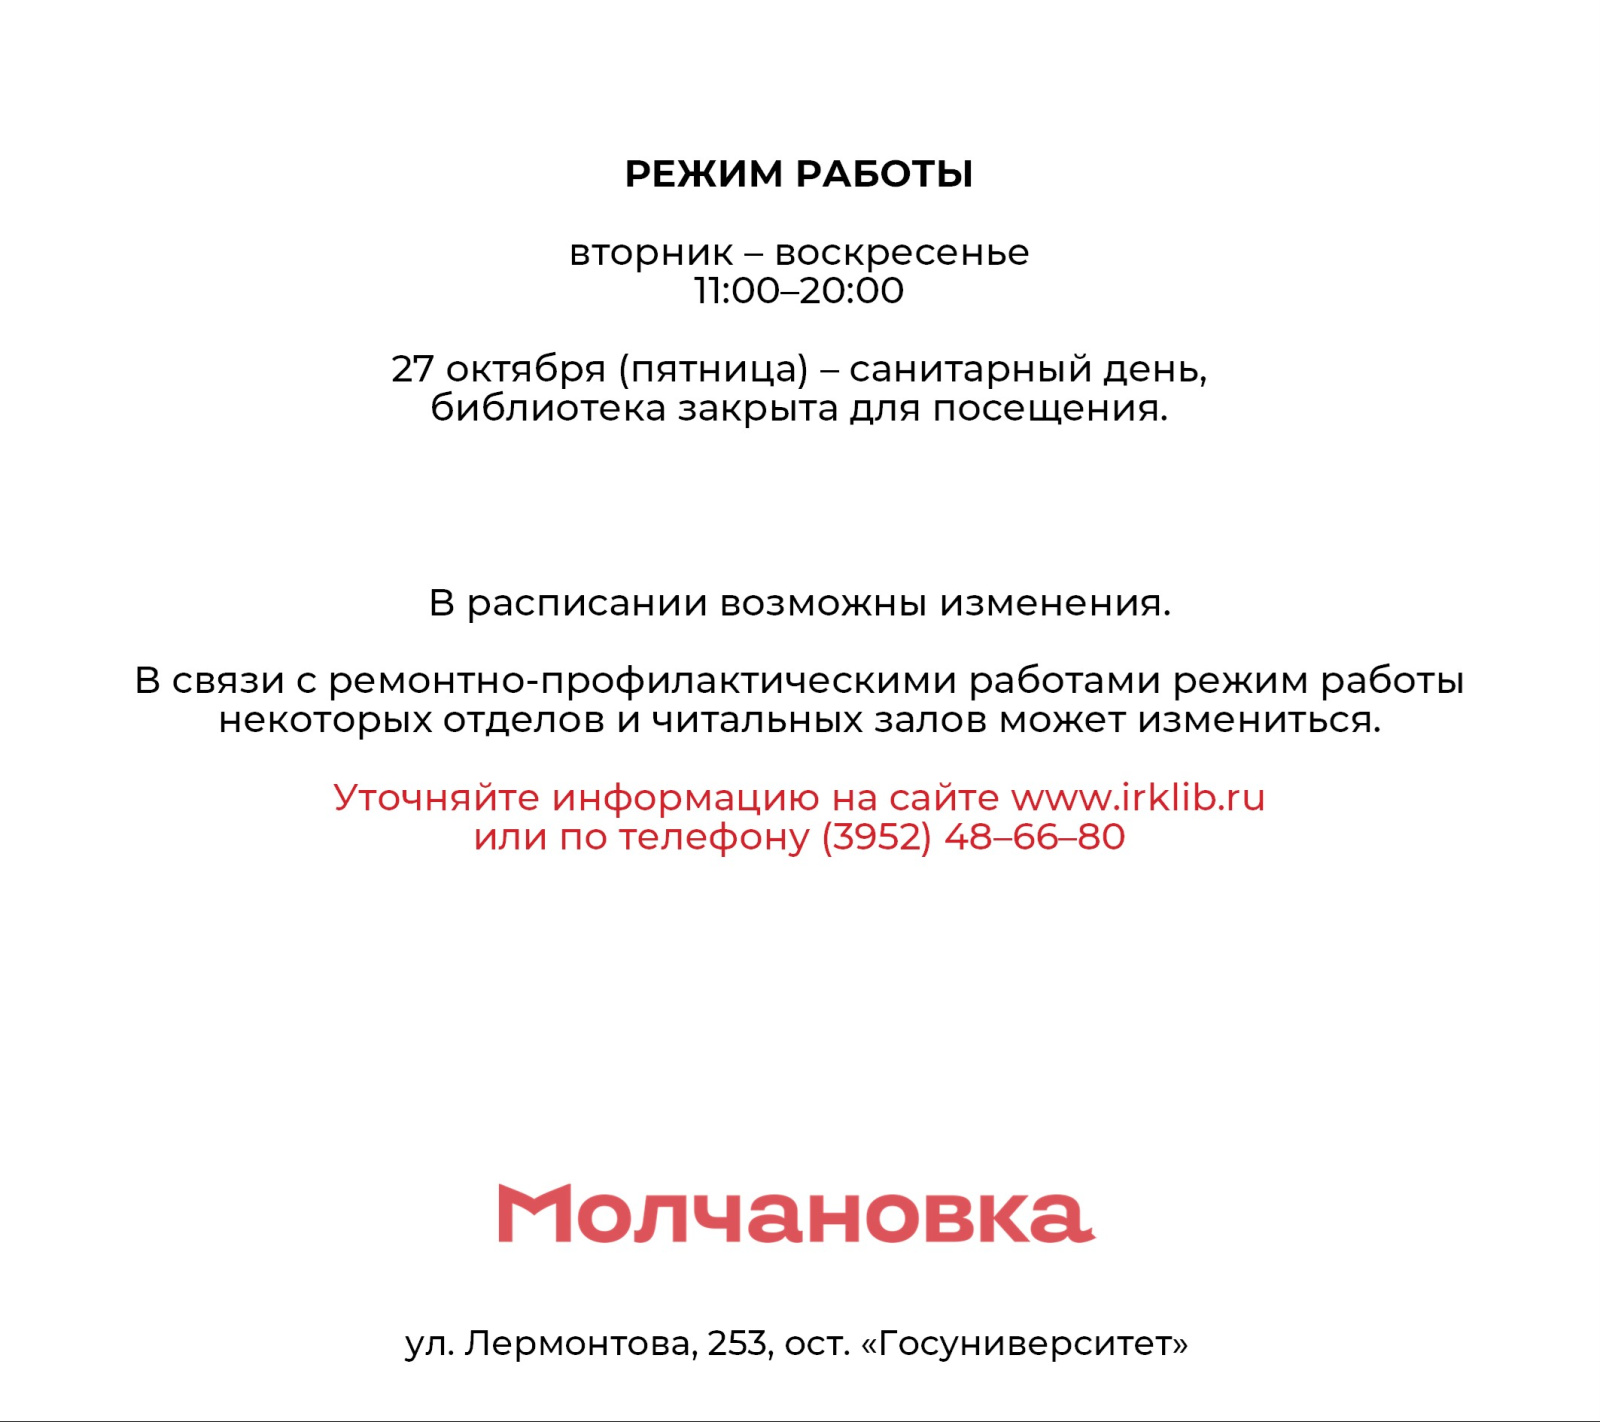 Molchanovka_october_event (6).jpg